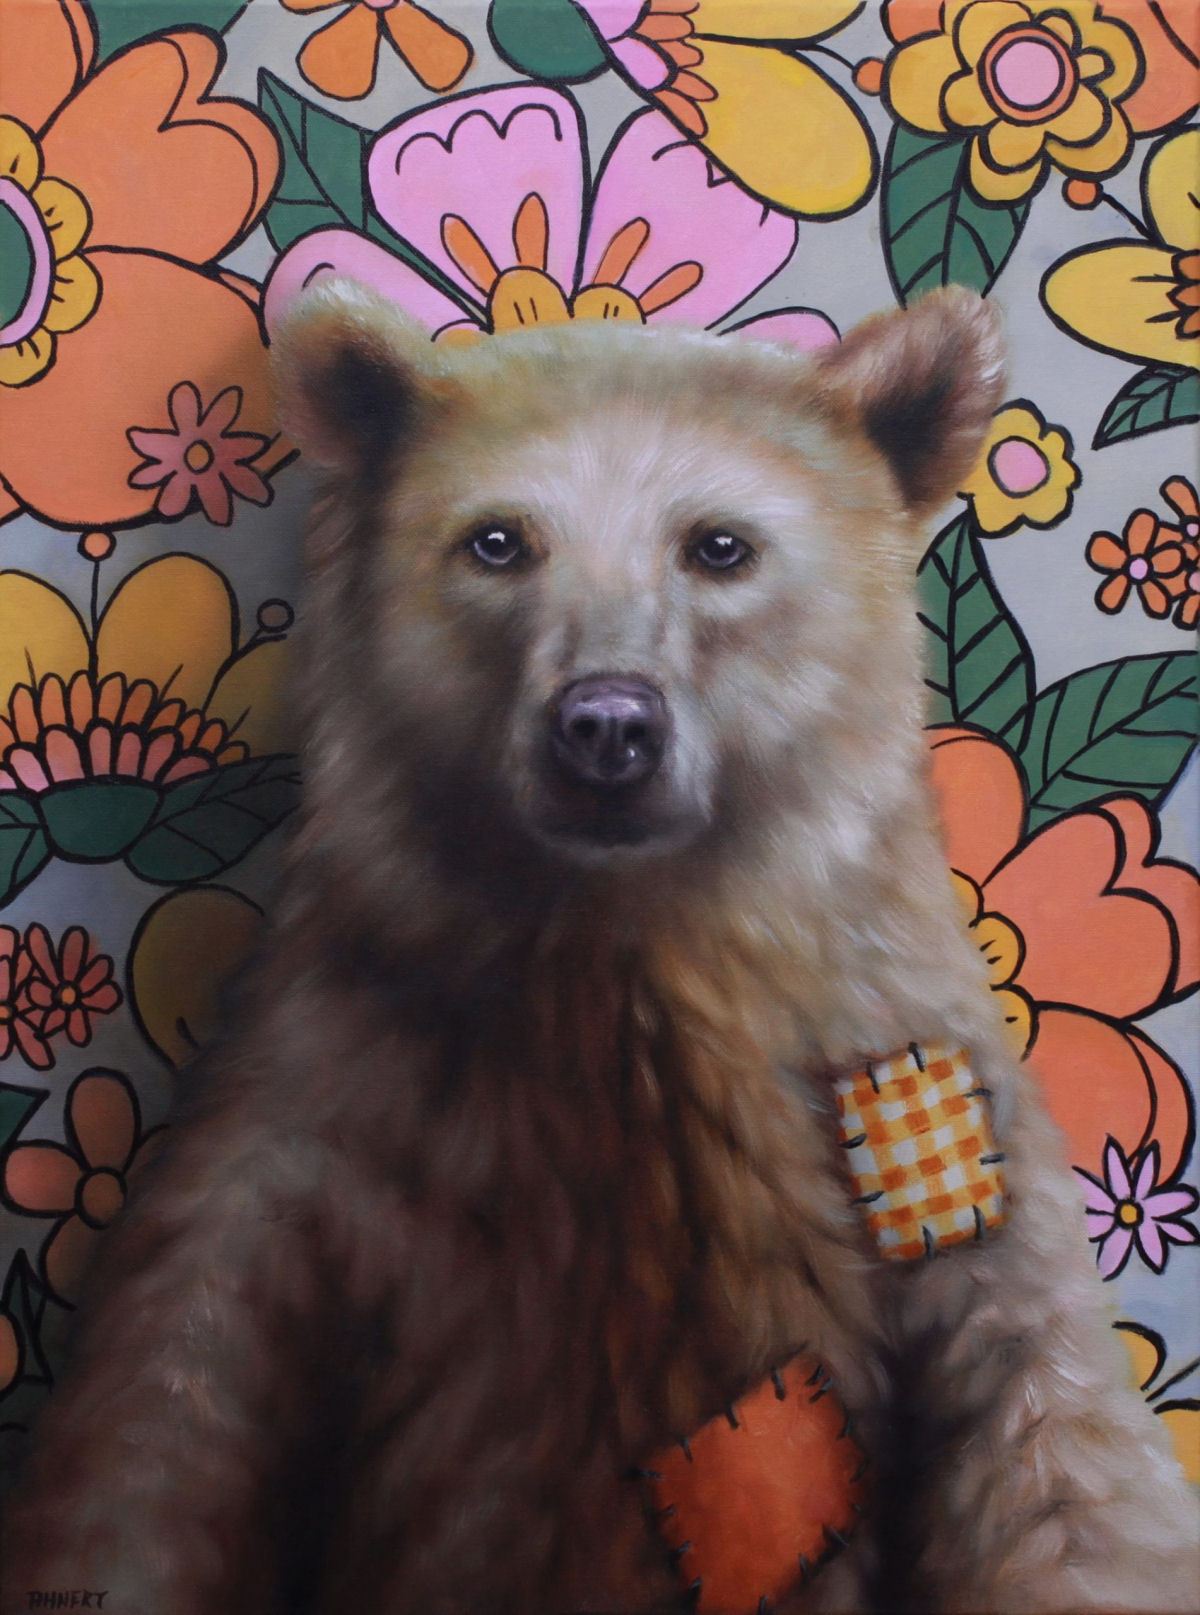 Pinturas a óleo antropomórficas emprestam narrativas satíricas para ursos 07